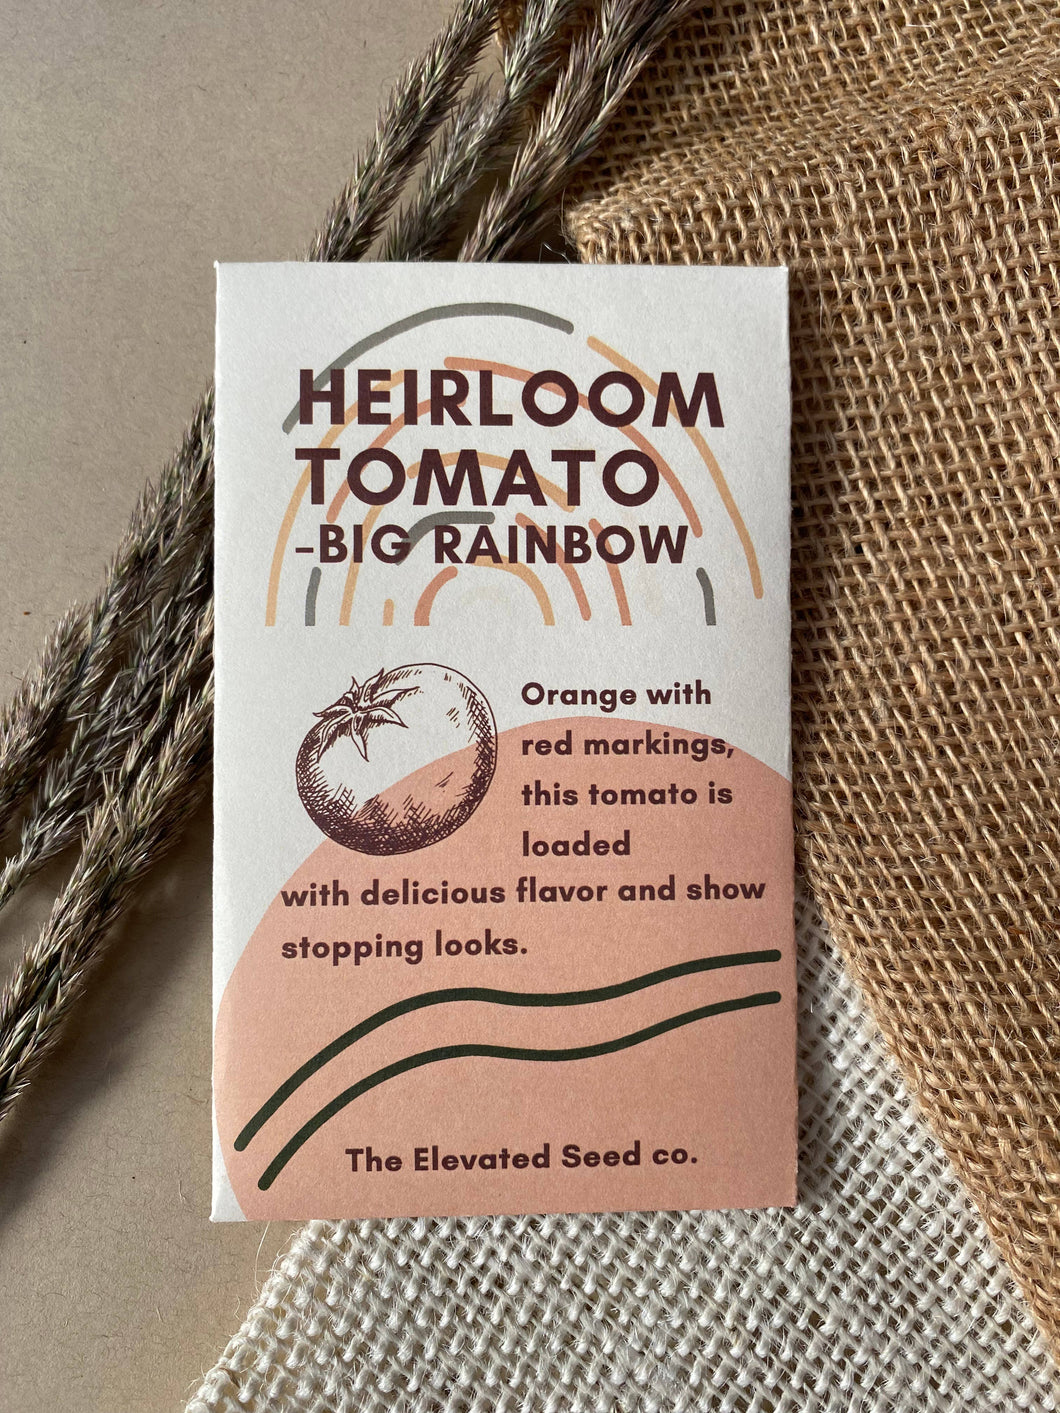 Heirloom Tomato Seeds- Big Rainbow